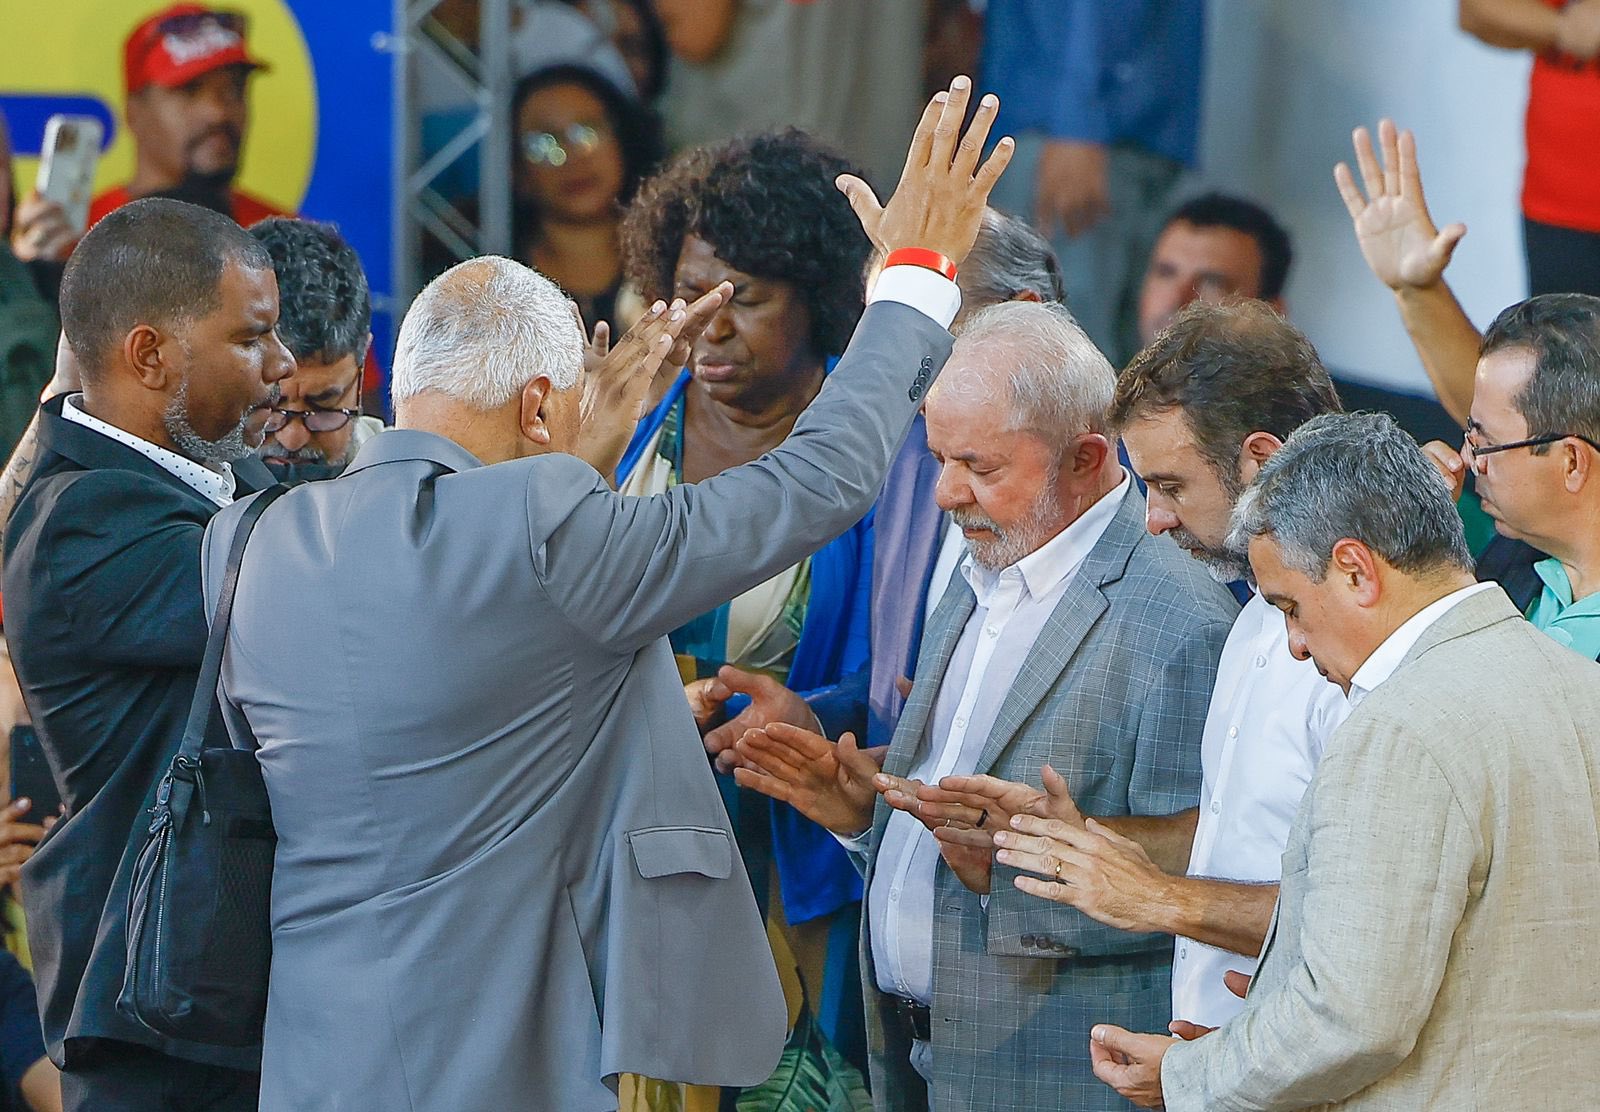 Foto: Ricardo Stuckert. Lula é abraçado pelo evangélicos no Rio de Janeiro